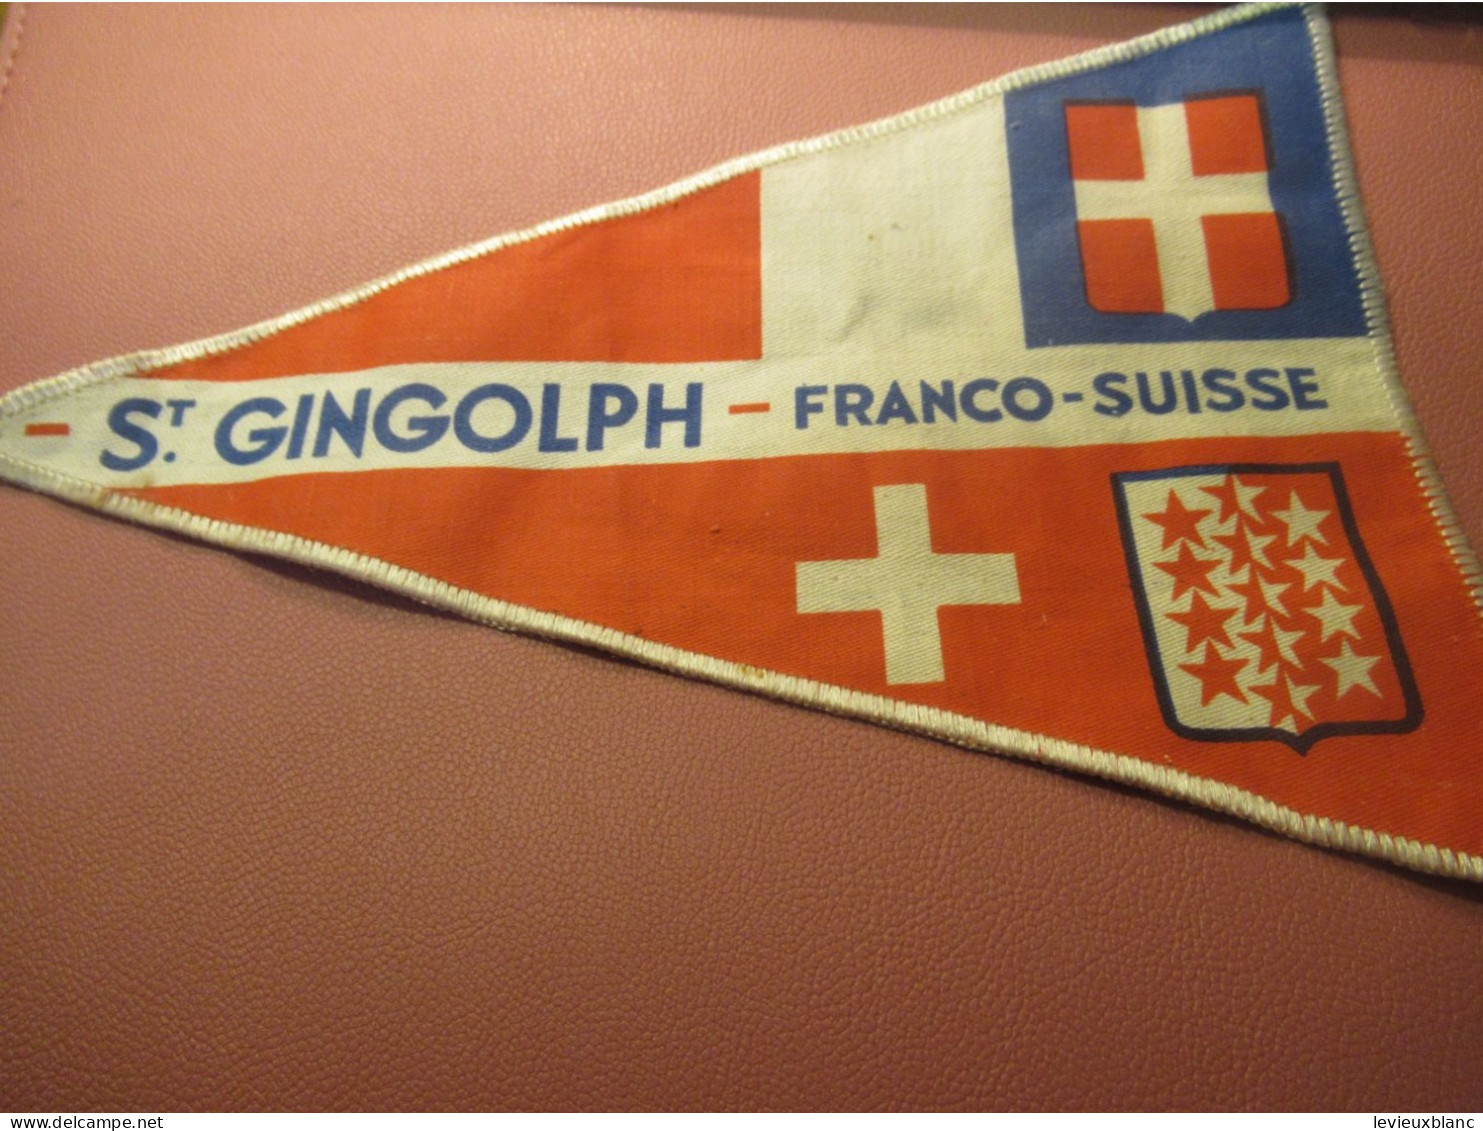 Fanion Touristique Ancien / St GINGOLPH - Franco-Suisse /Vers 1950                 DFA69 - Flaggen